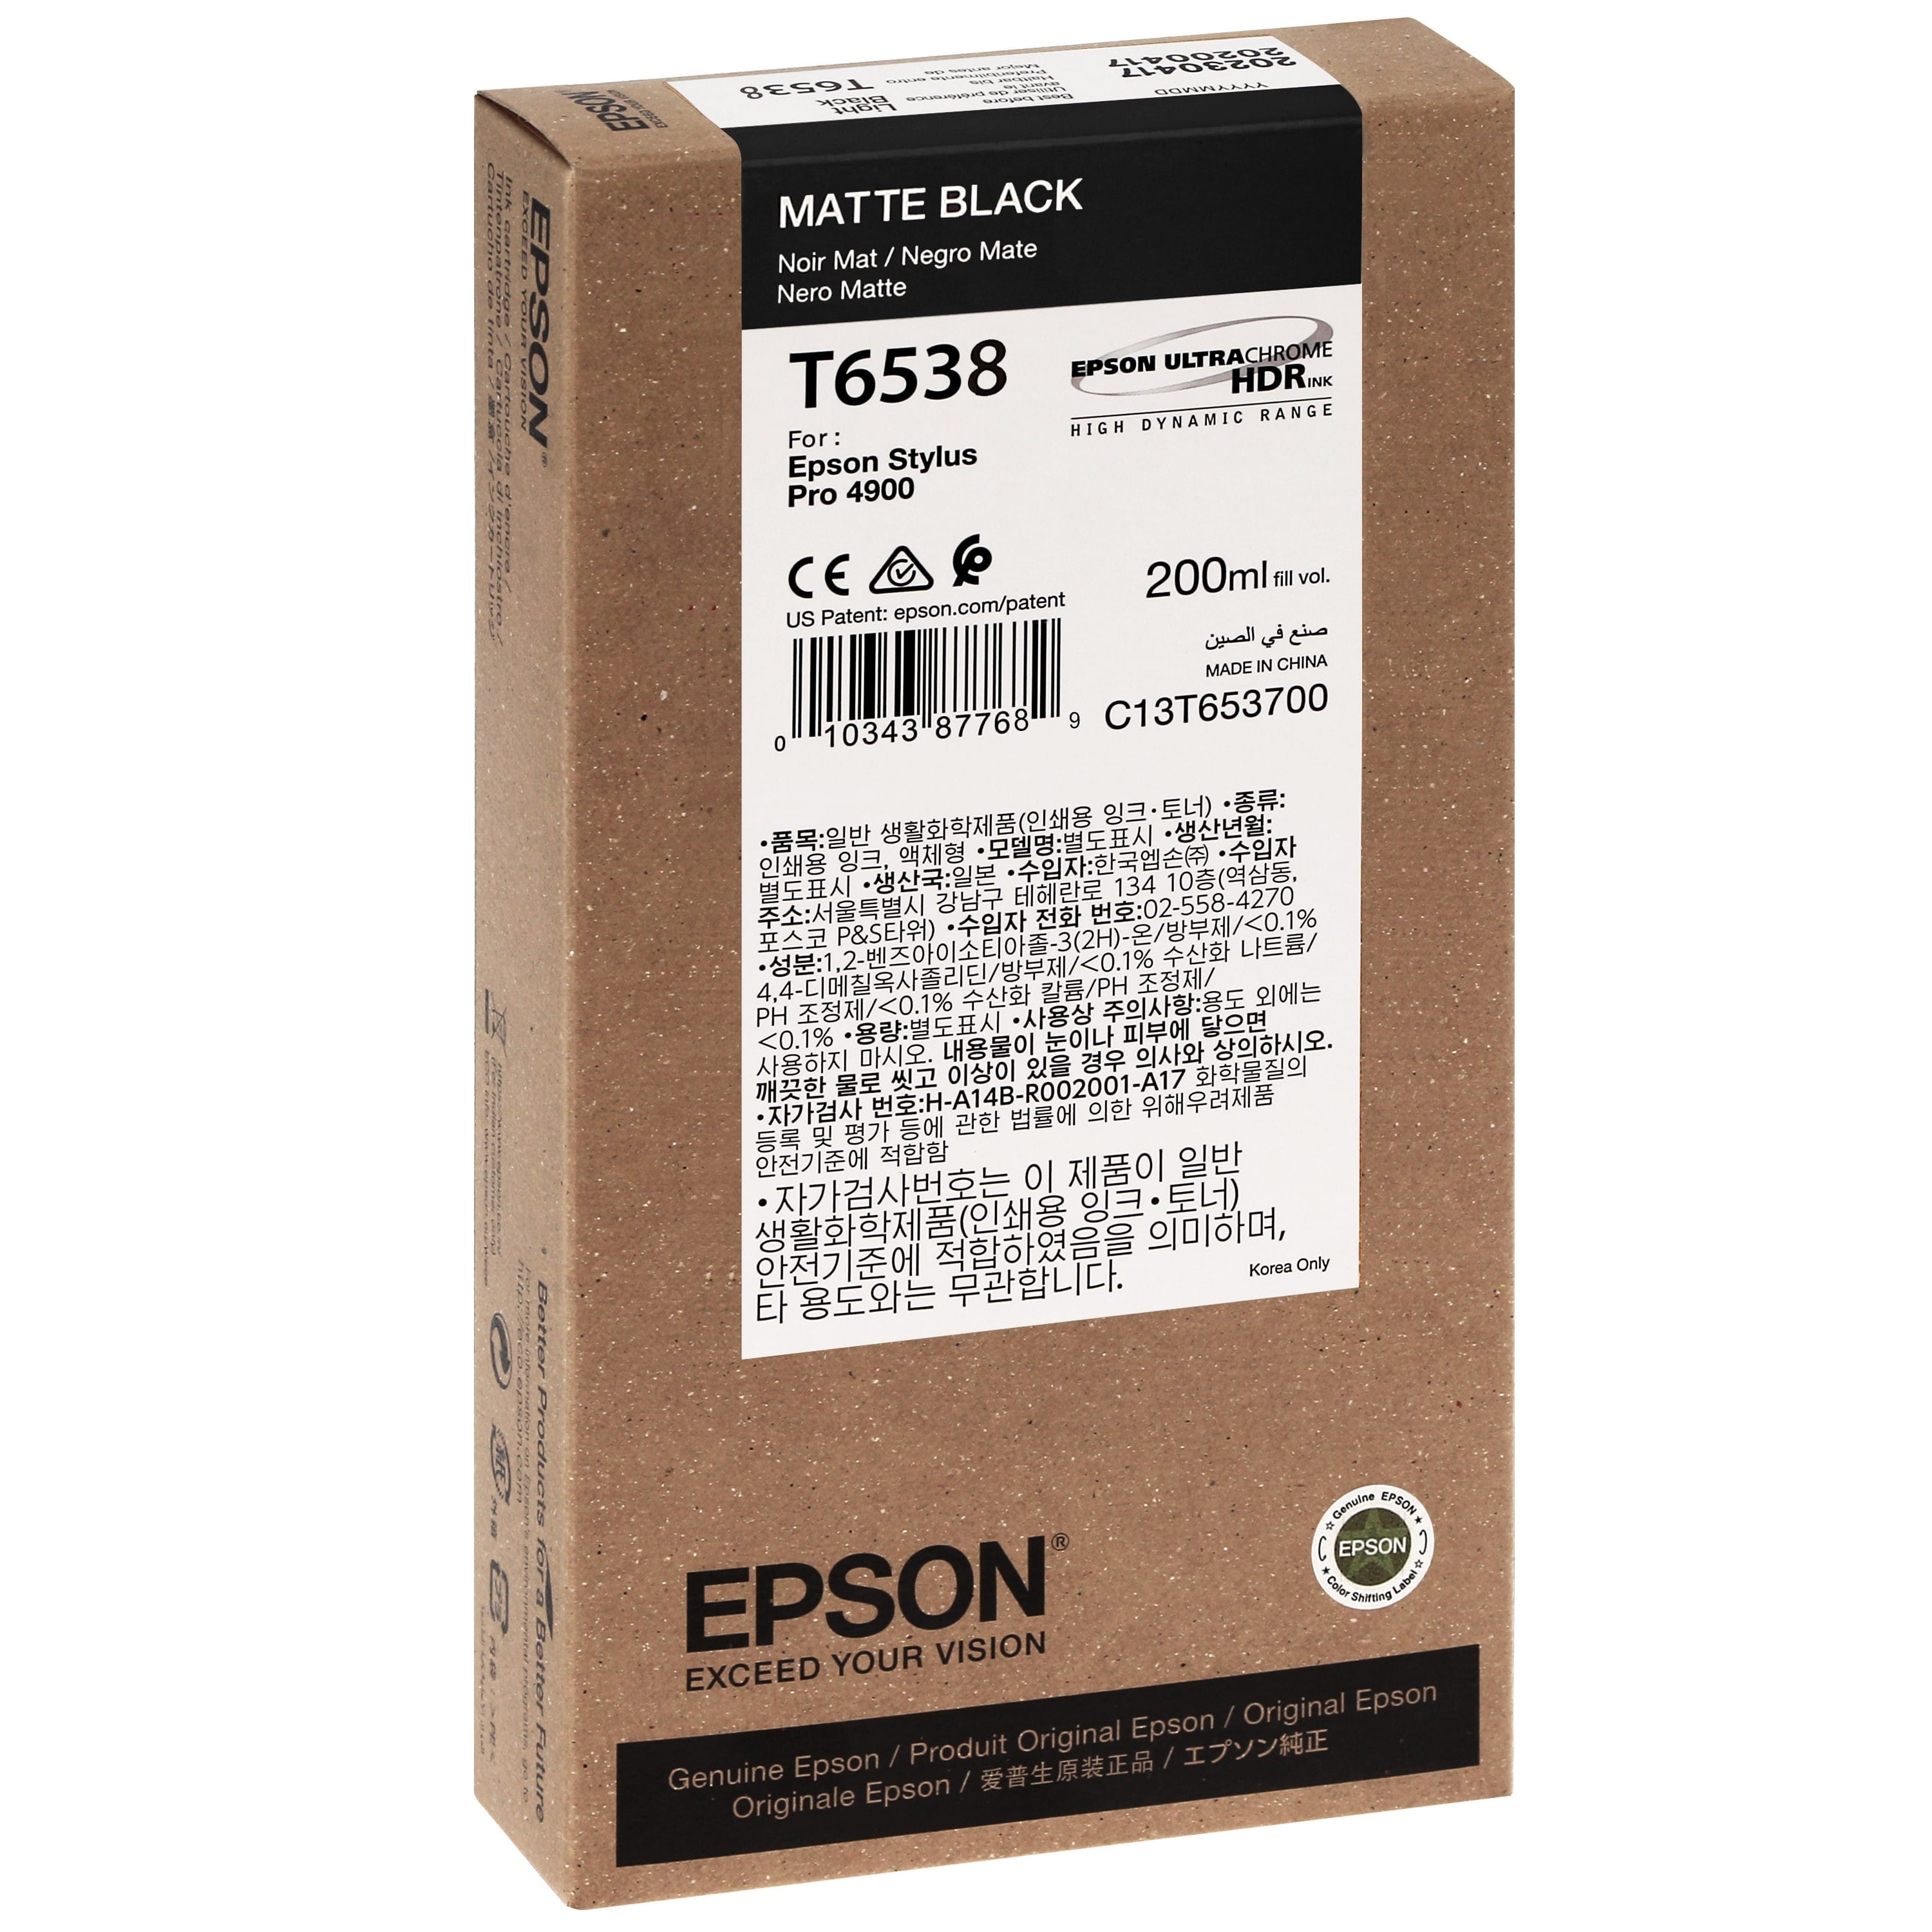 EPSON - Cartouche d'encre traceur T6538 Pour imprimante 4900 Noir mat - 200ml